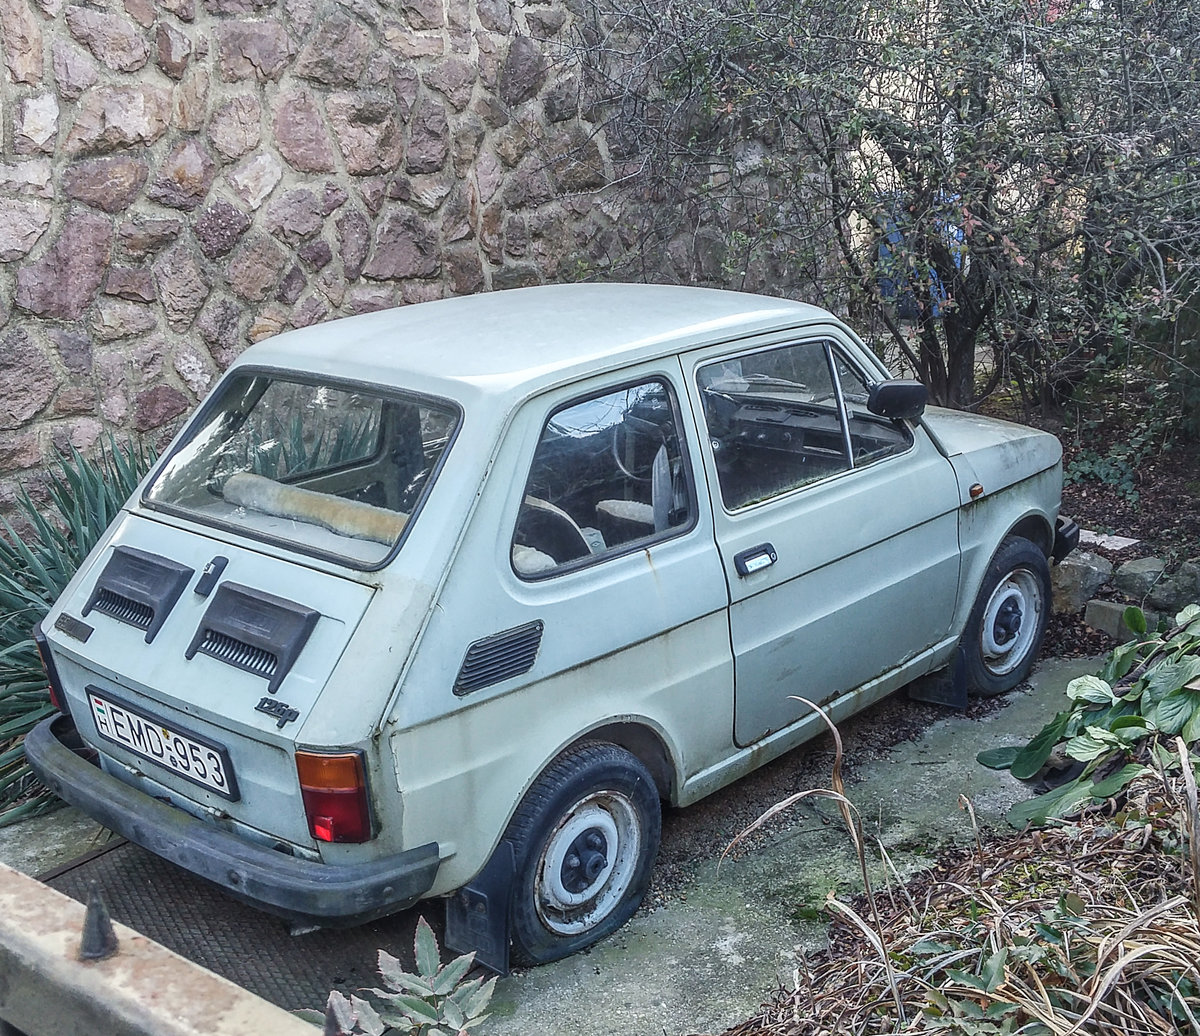 Polsi Fiat 126p. Foto: januar, 2020